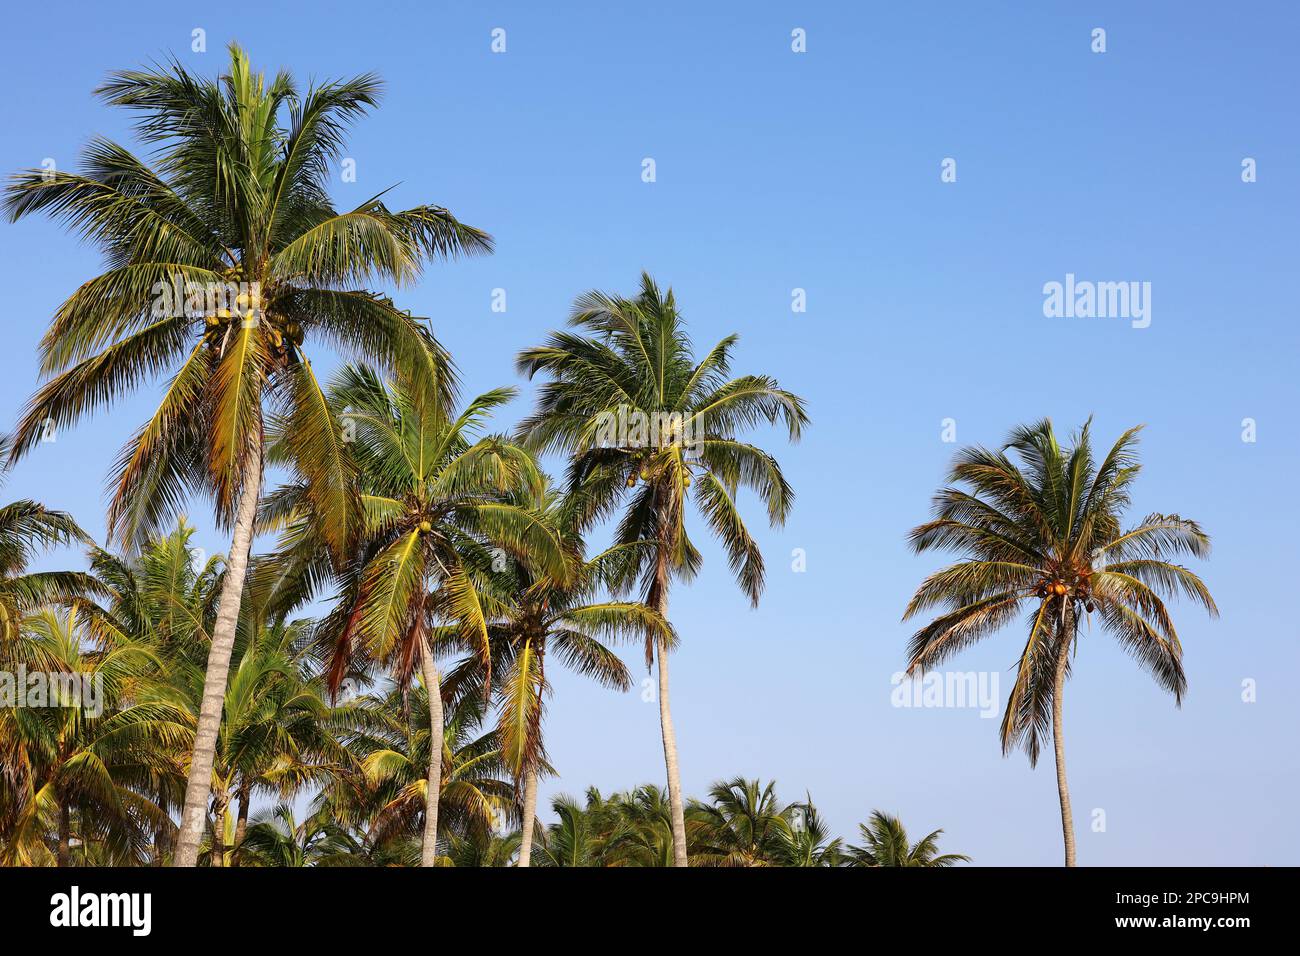 Palmiers à noix de coco sur fond bleu ciel.Plage tropicale, nature paradisiaque Banque D'Images